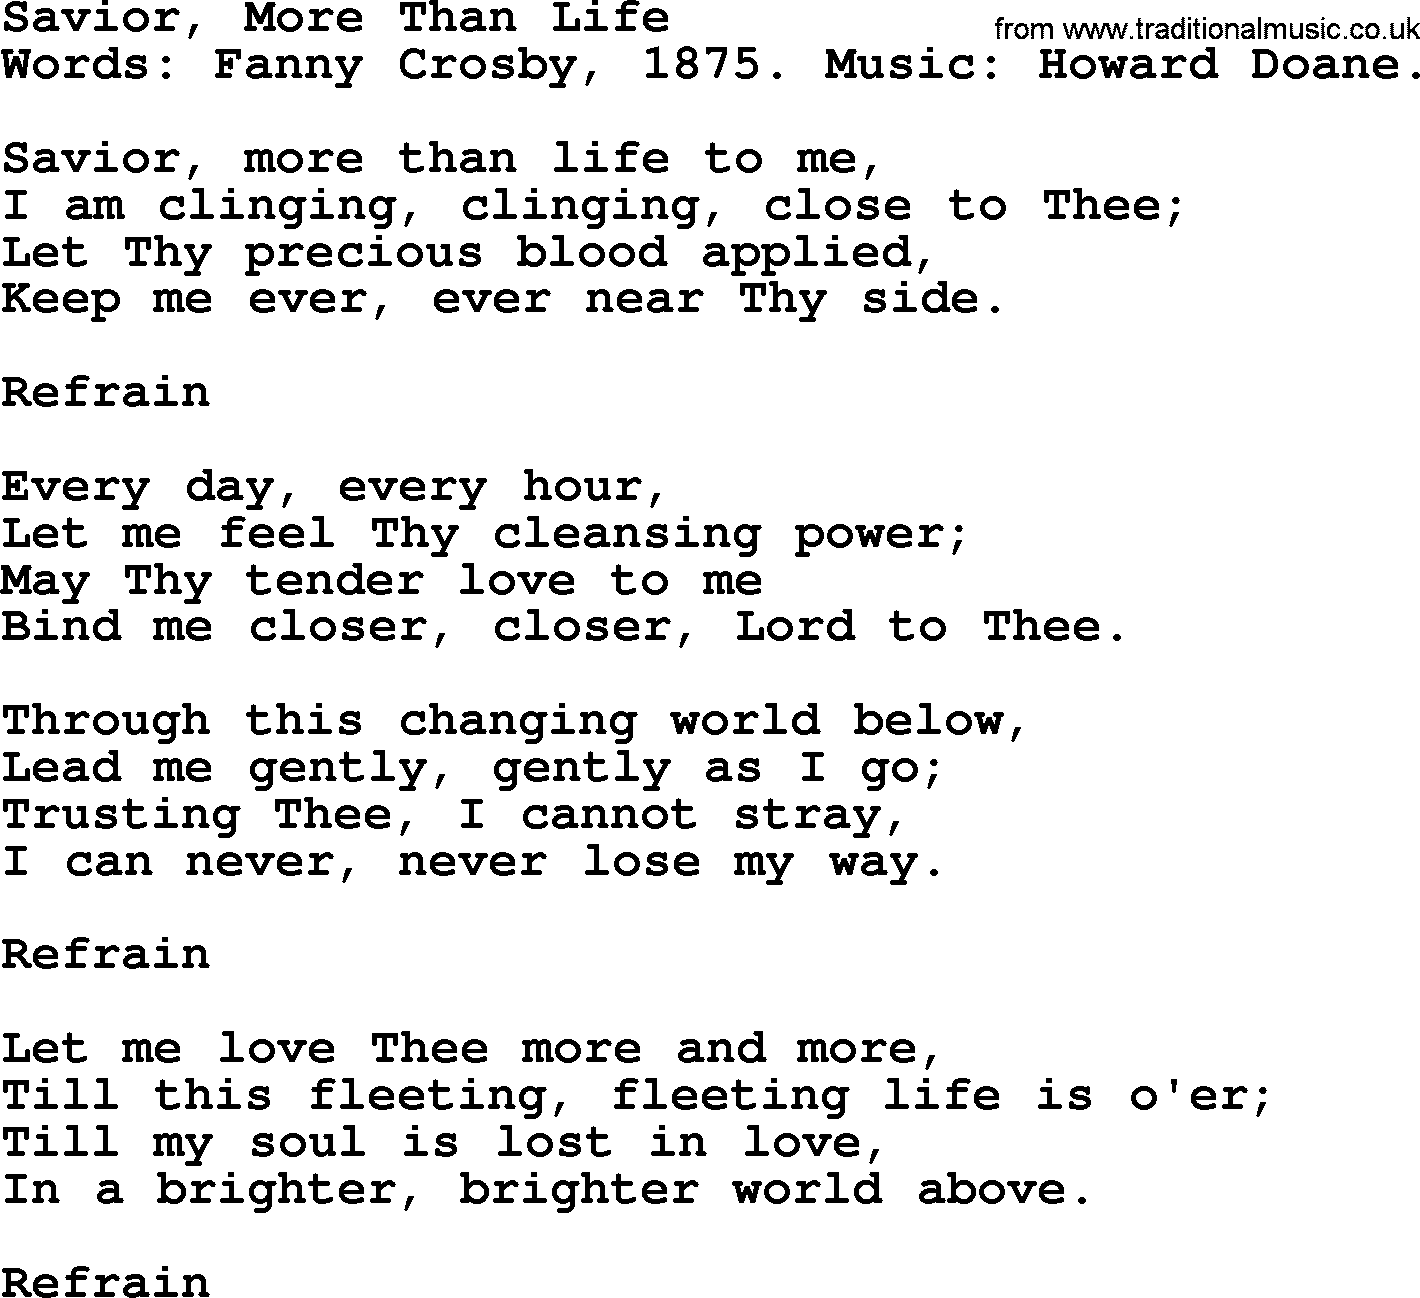 Fanny Crosby song: Savior, More Than Life, lyrics